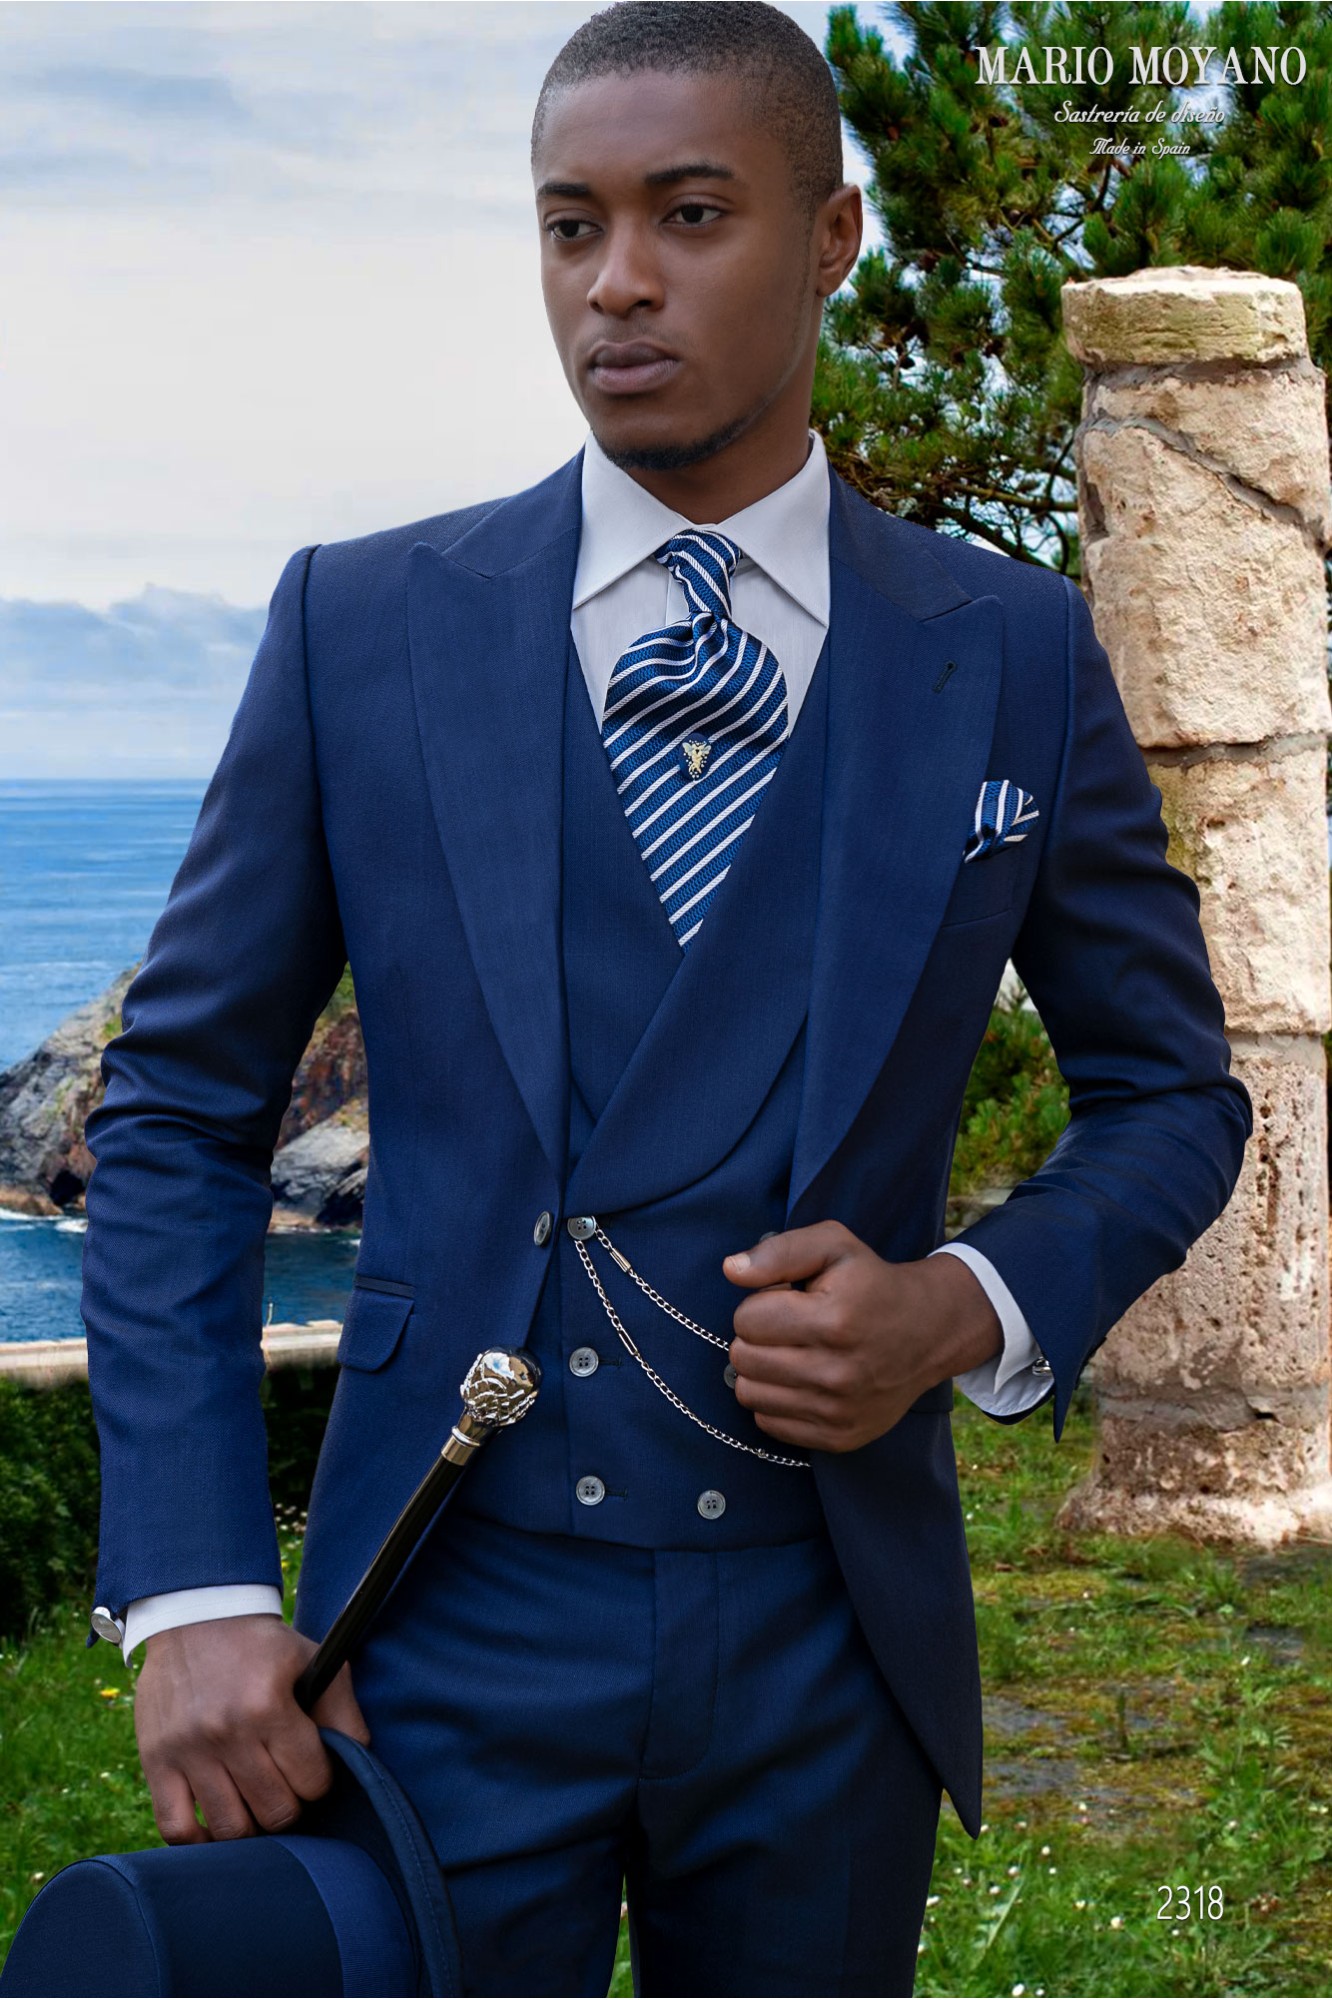 Blauer Hochzeits-Gehrock-Anzug aus reiner Wolle 2318 Mario Moyano